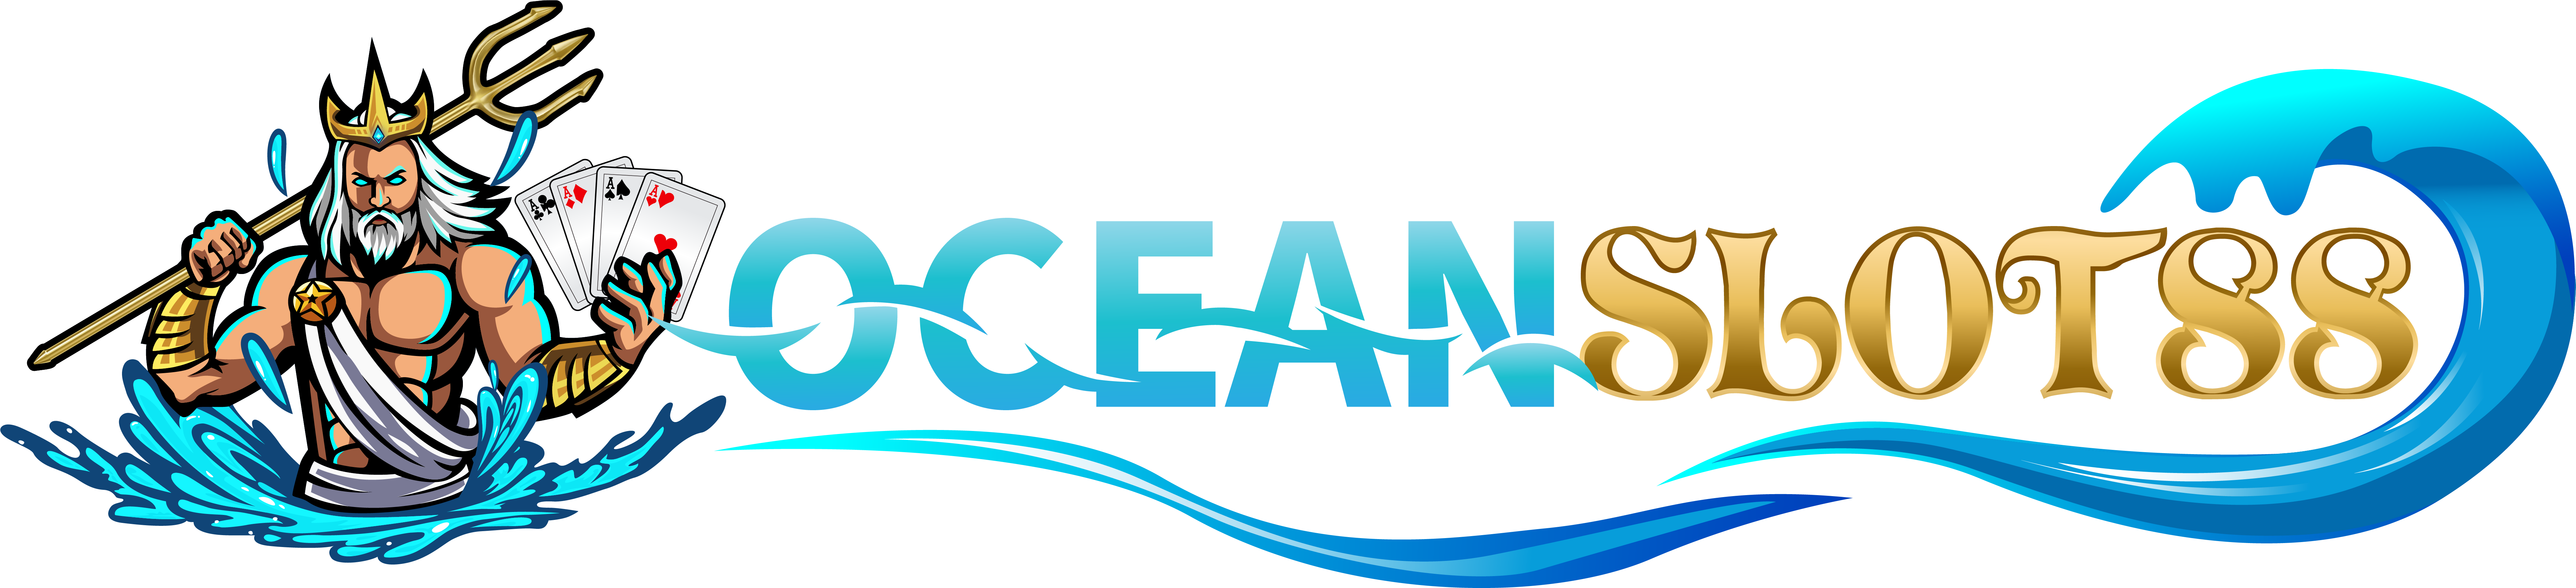 banner Oceanslot88